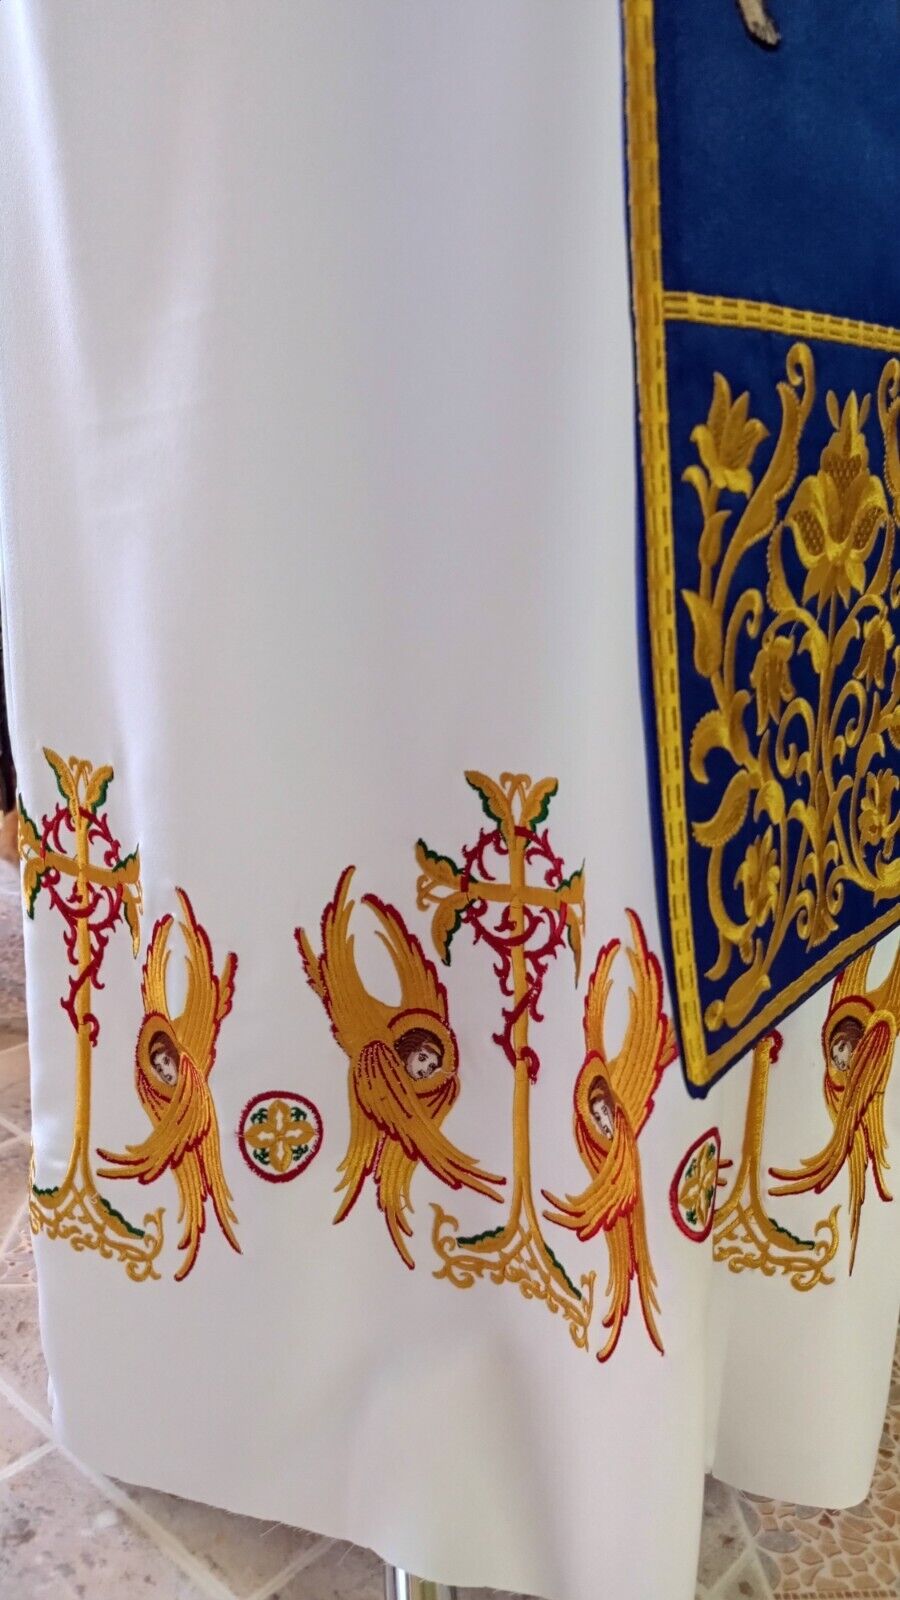 Stykhar with embroidery, podriznik, Orthodox Greek style vestment